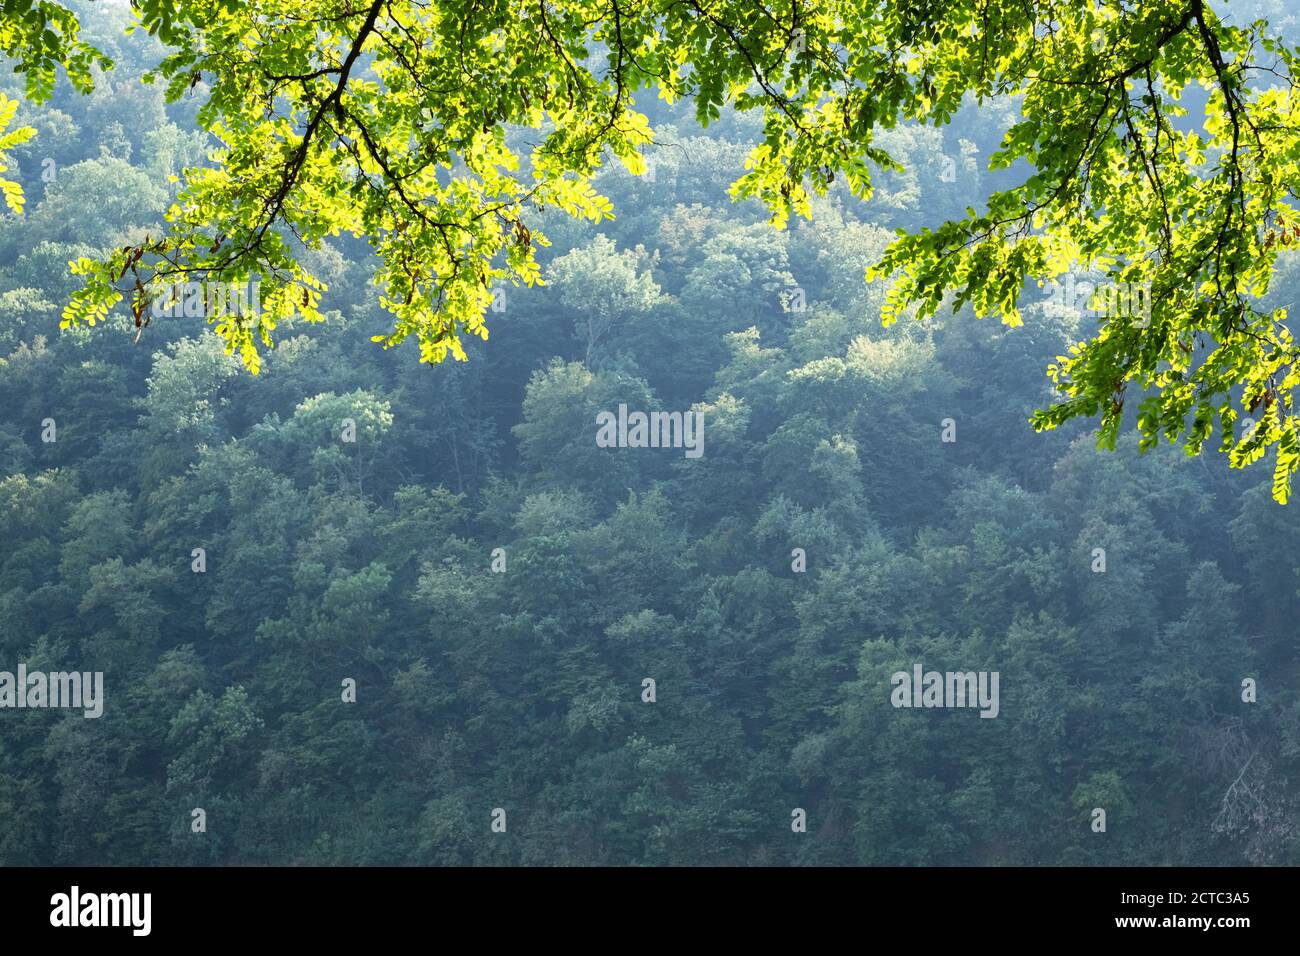 Nahaufnahme Naturansicht von grünen Akazienblättern auf Frühlingszweigen auf verschwommenem Hintergrund im Wald. Copyspace machen Verwendung als natürliche grüne Pflanzen und Ökologie Hintergrund Stockfoto